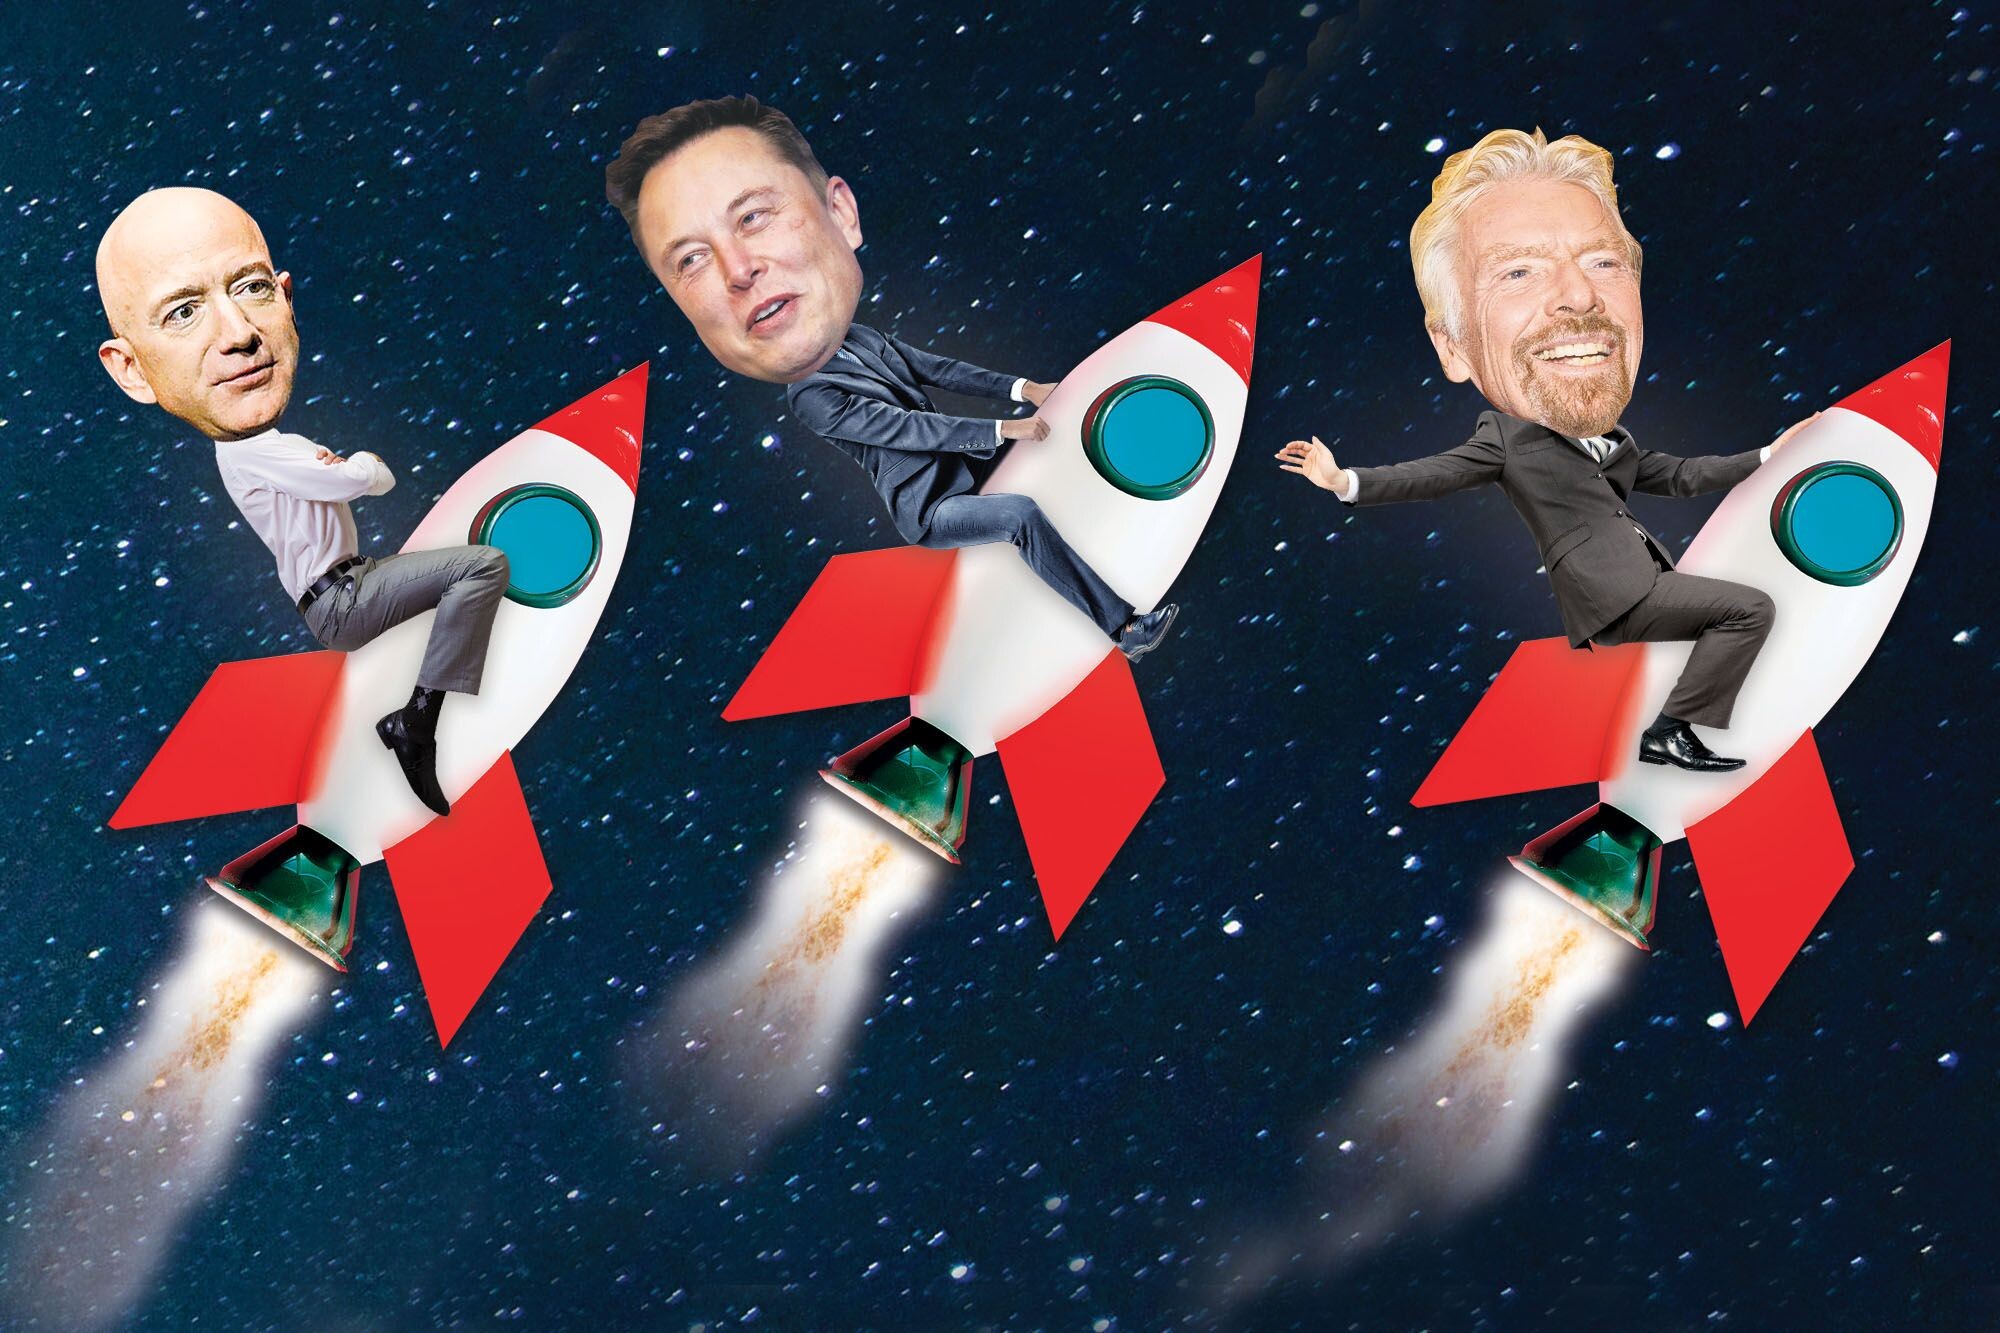 Vesmírná odysea Elona Muska, Jeffa Bezose a Richarda Bransona